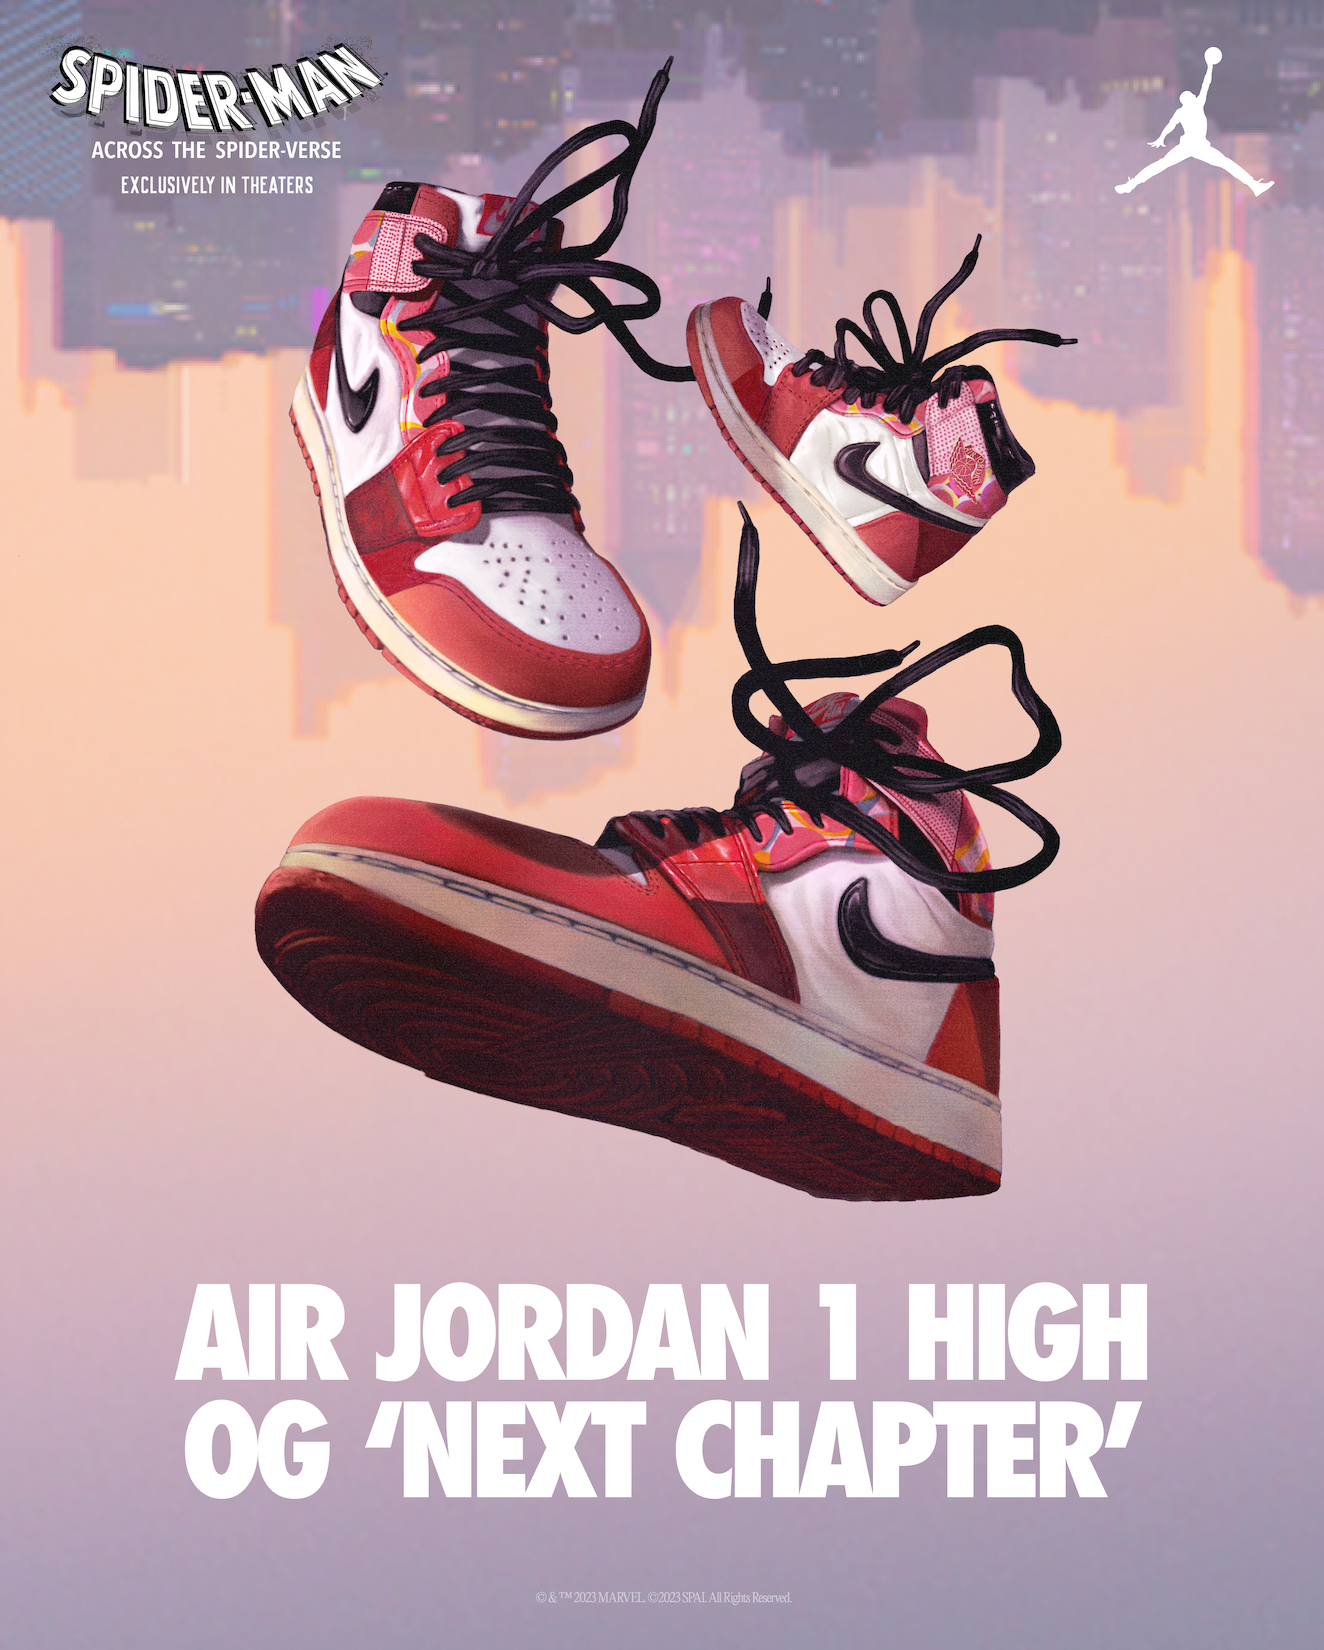 4K] Jordan 1 Retro High OG Pack 